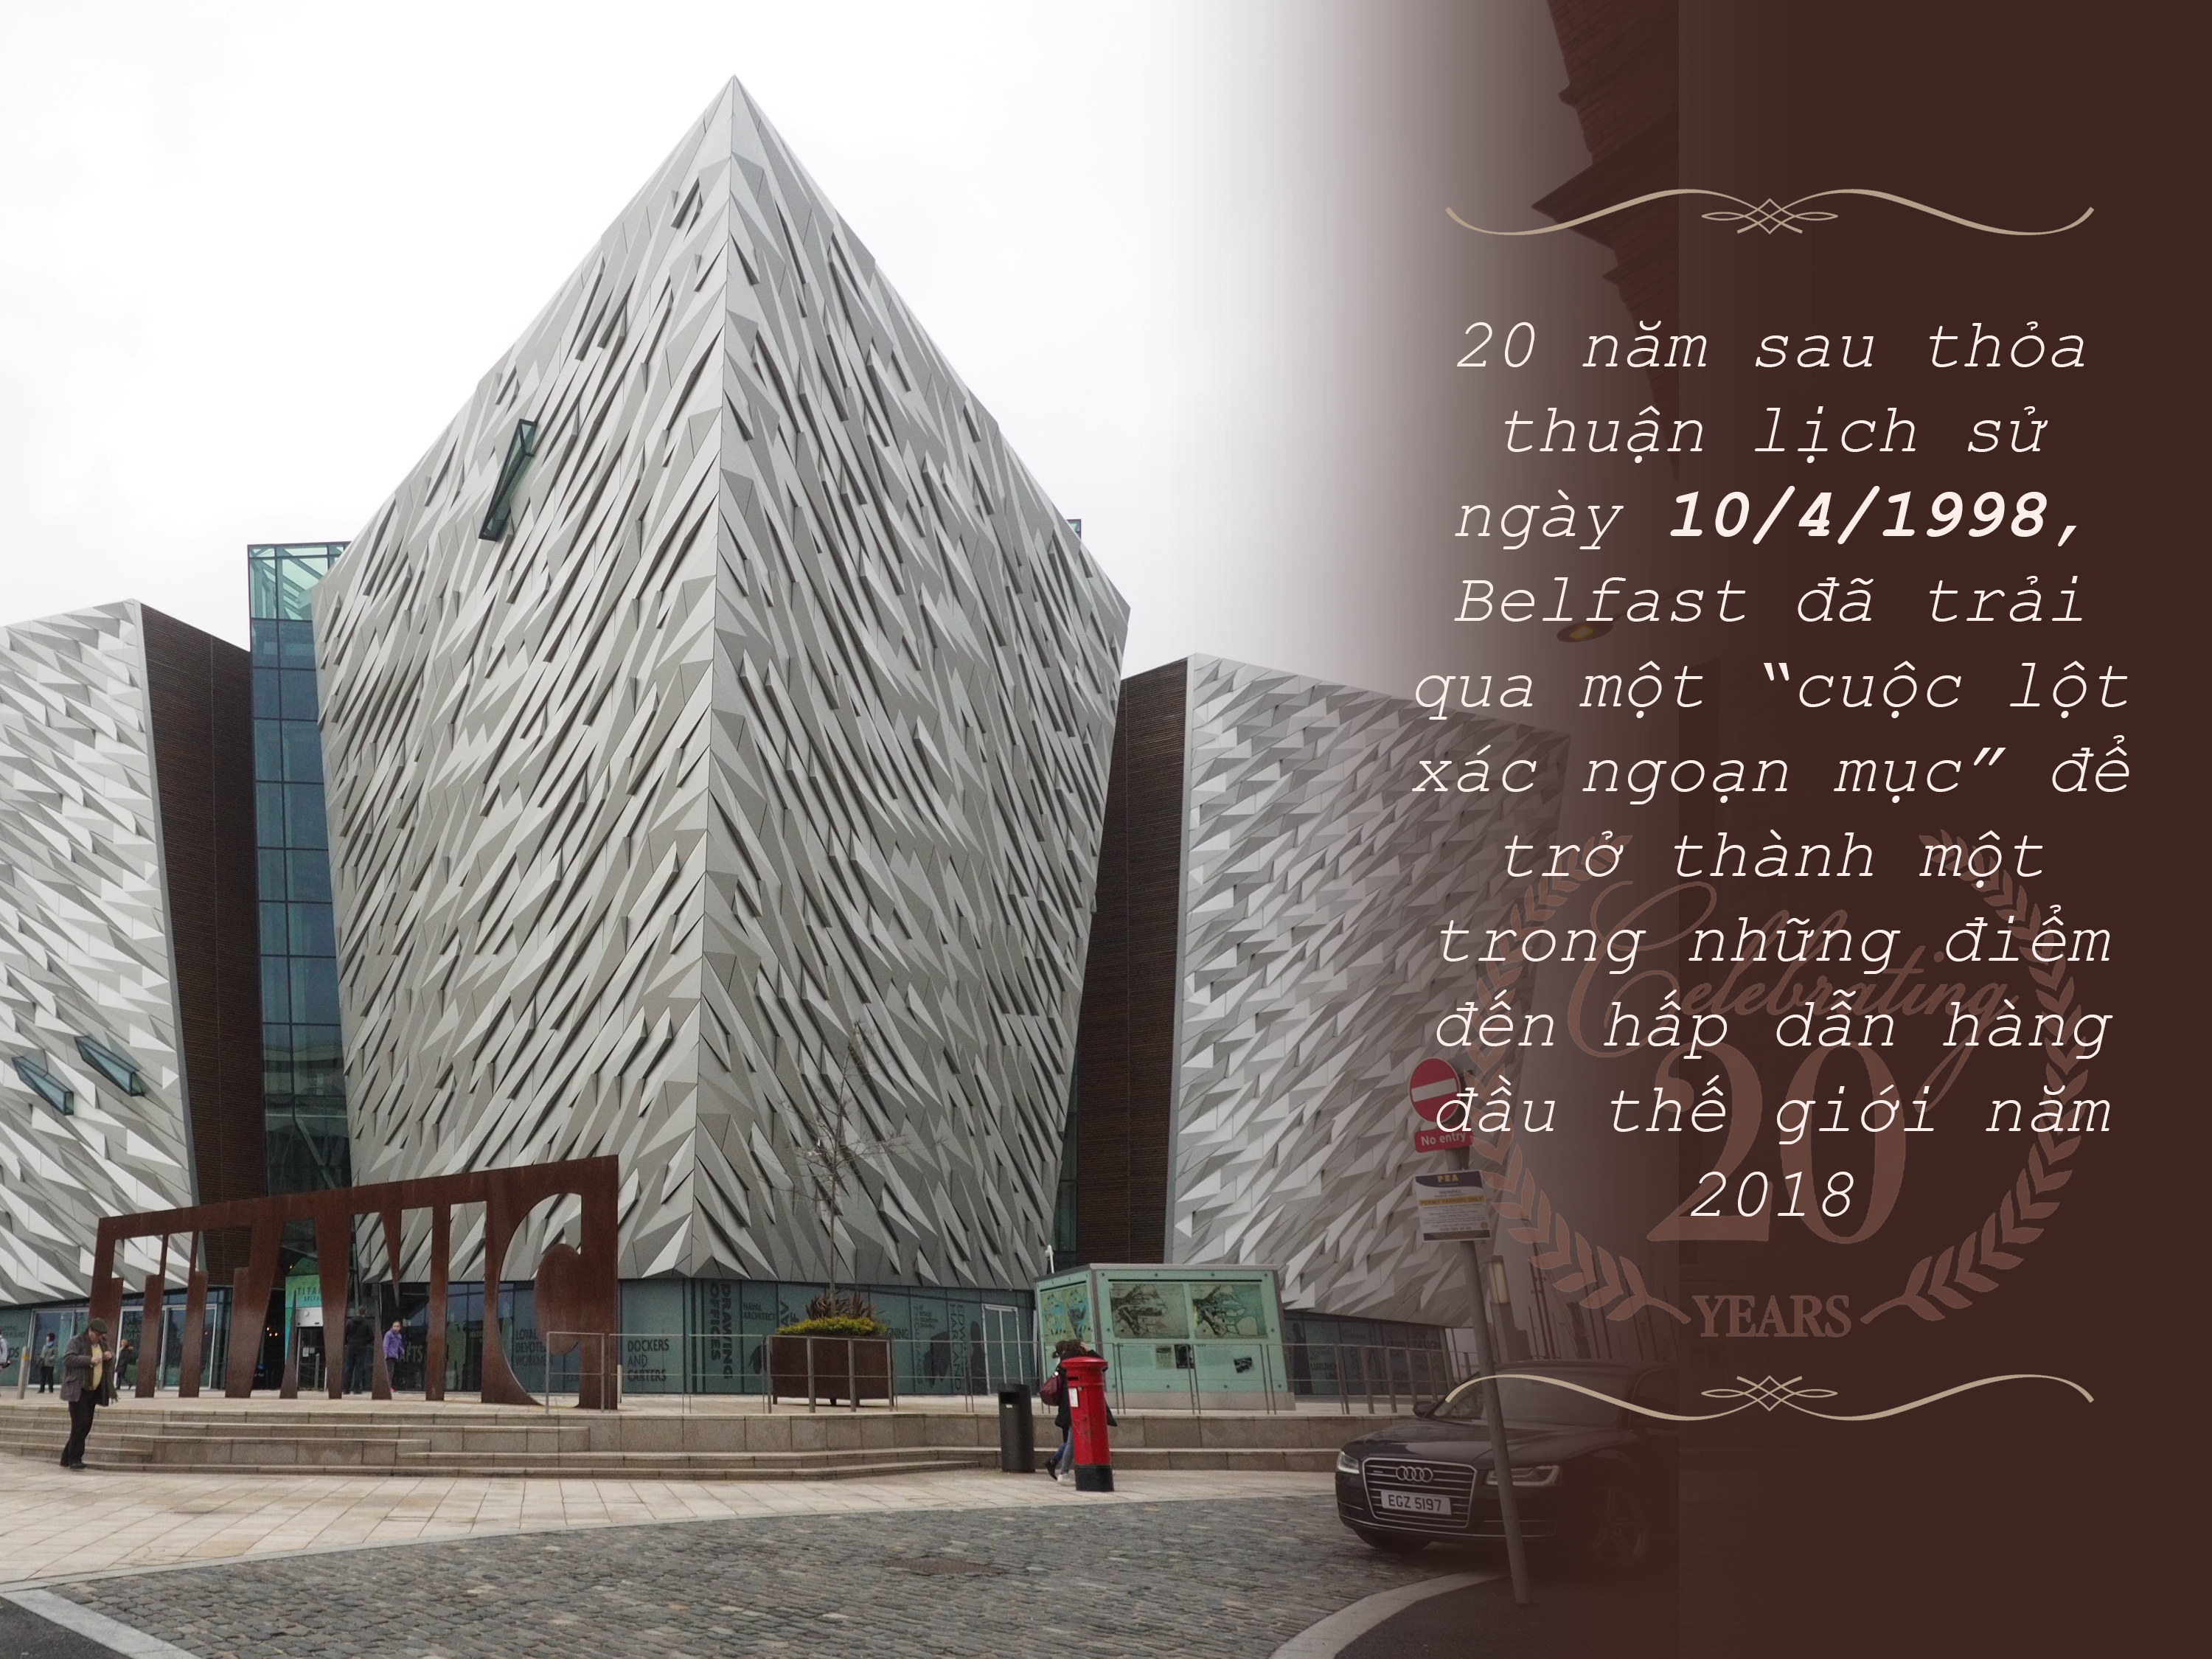 Bảo tàng Titanic, một biểu tượng du lịch của thành phố Belfast. (Ảnh: Tuấn Anh/Vietnam+)